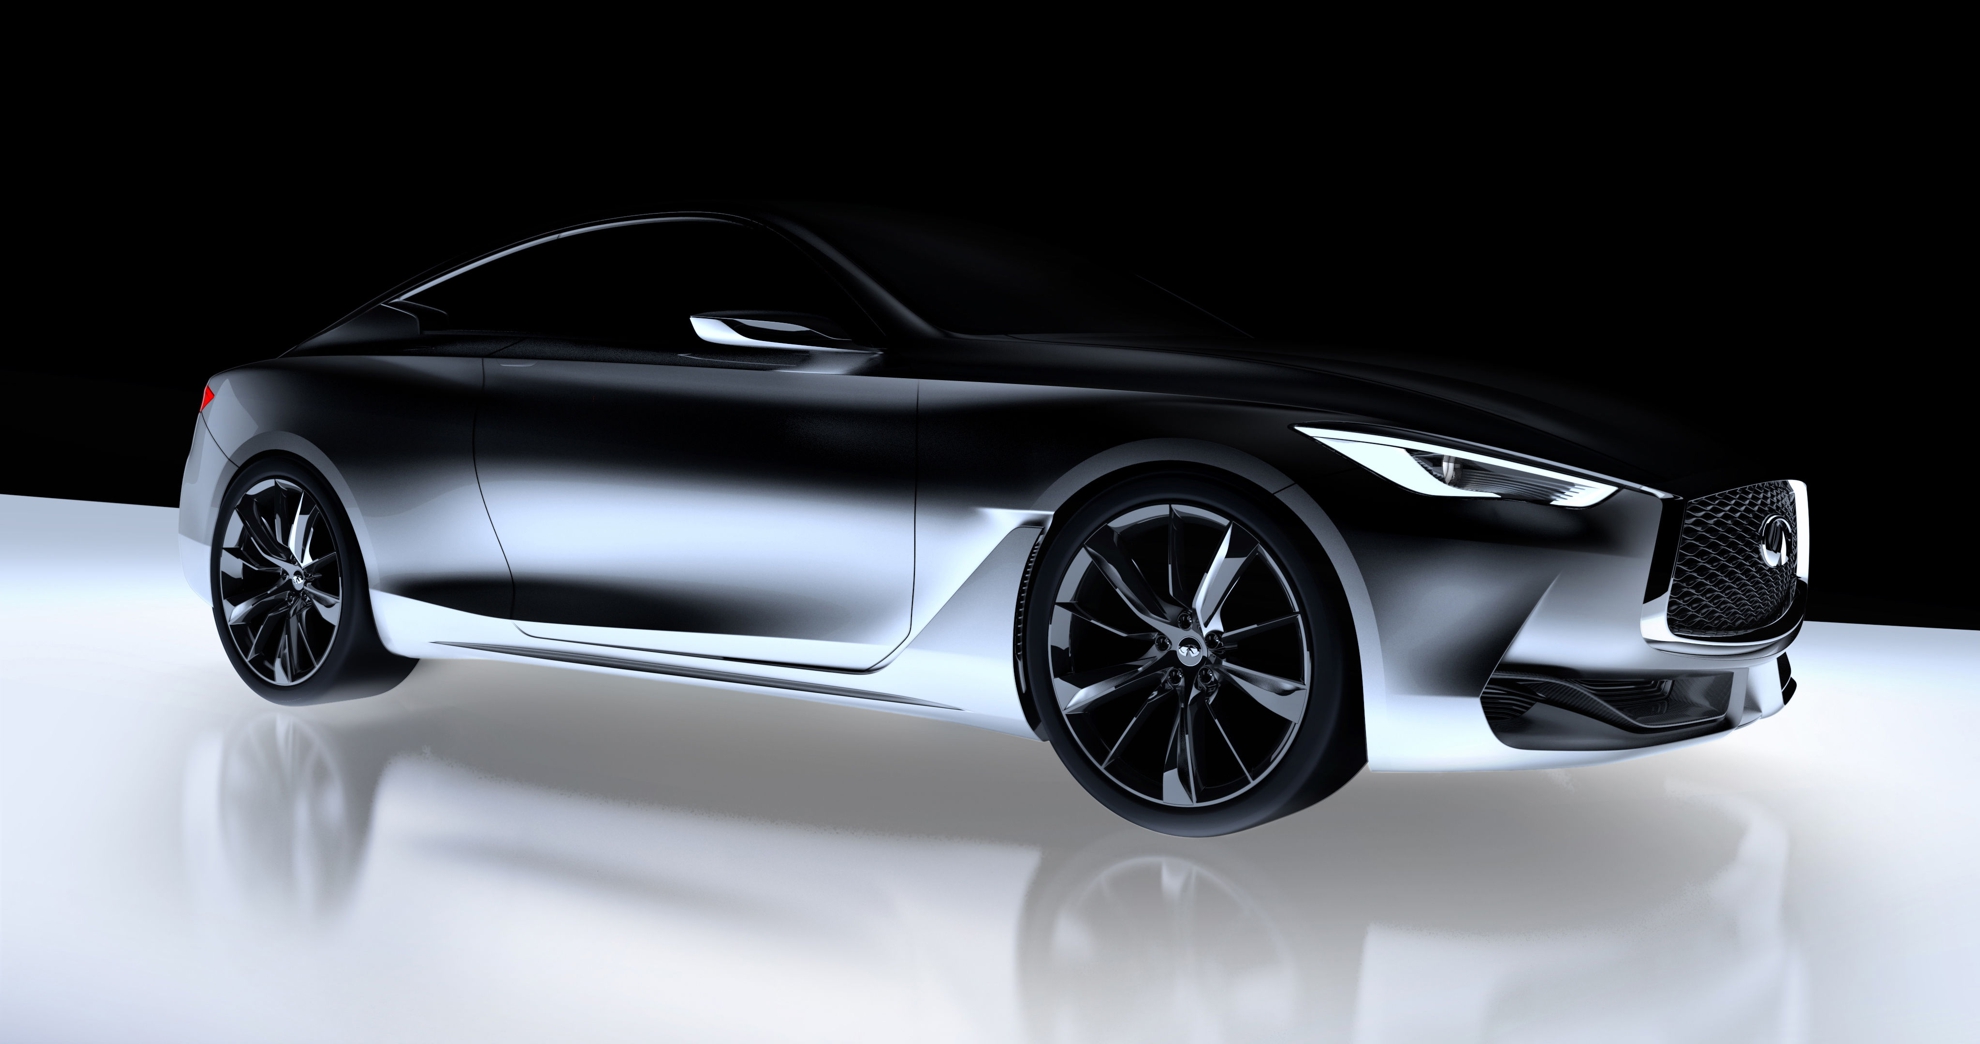 Geneva Motor Show – Infiniti Q60 Concept Car